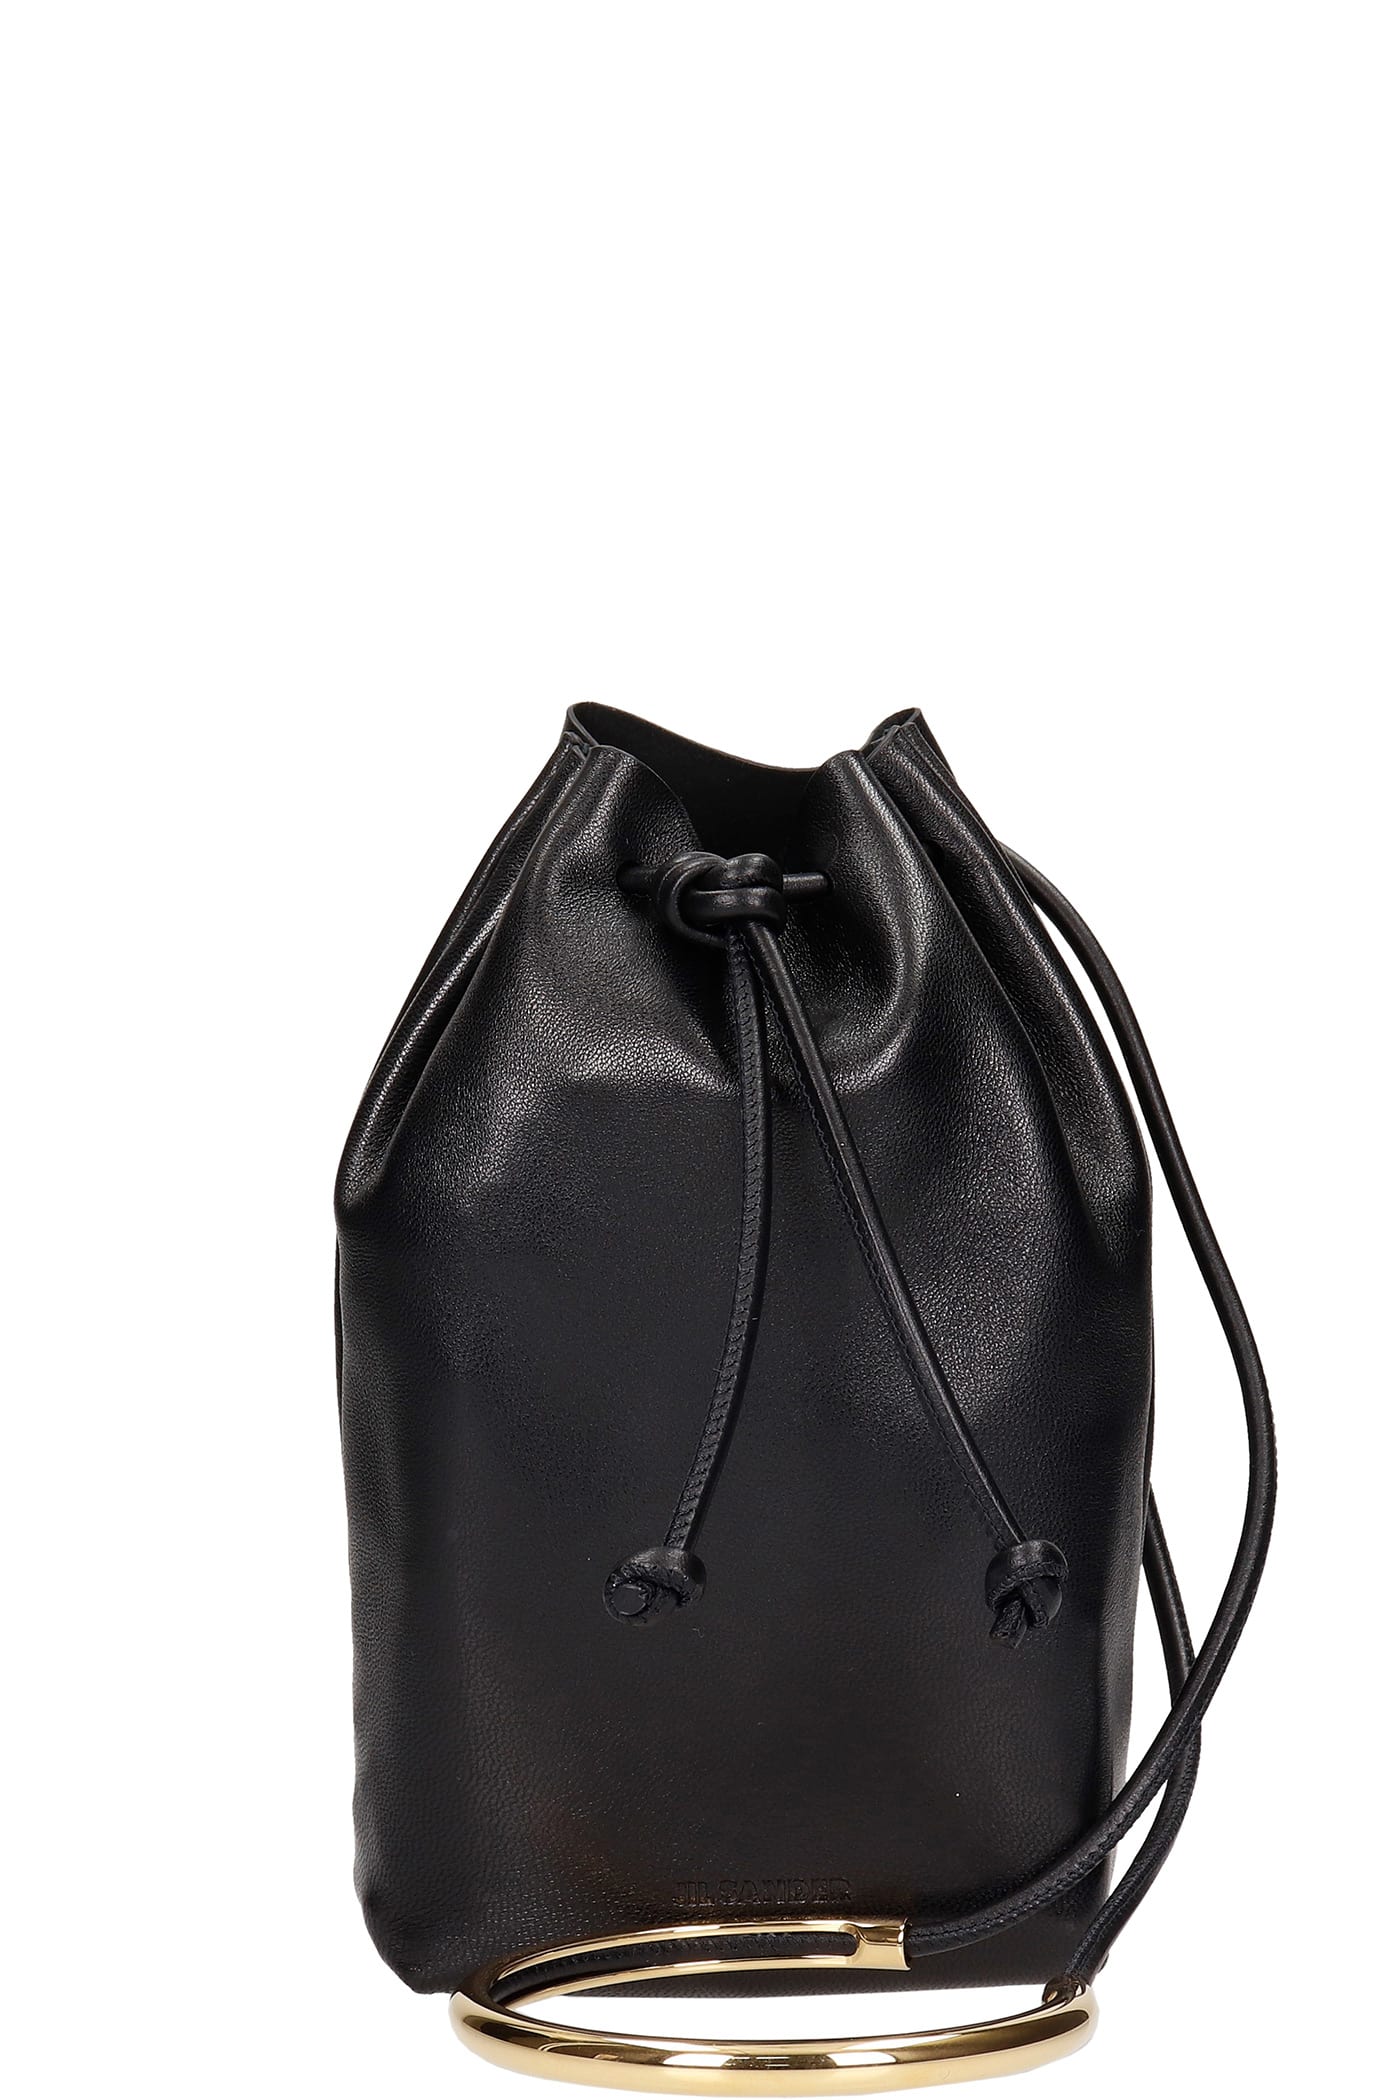 Jil Sander Drawstring Hand Bag In Black Leather